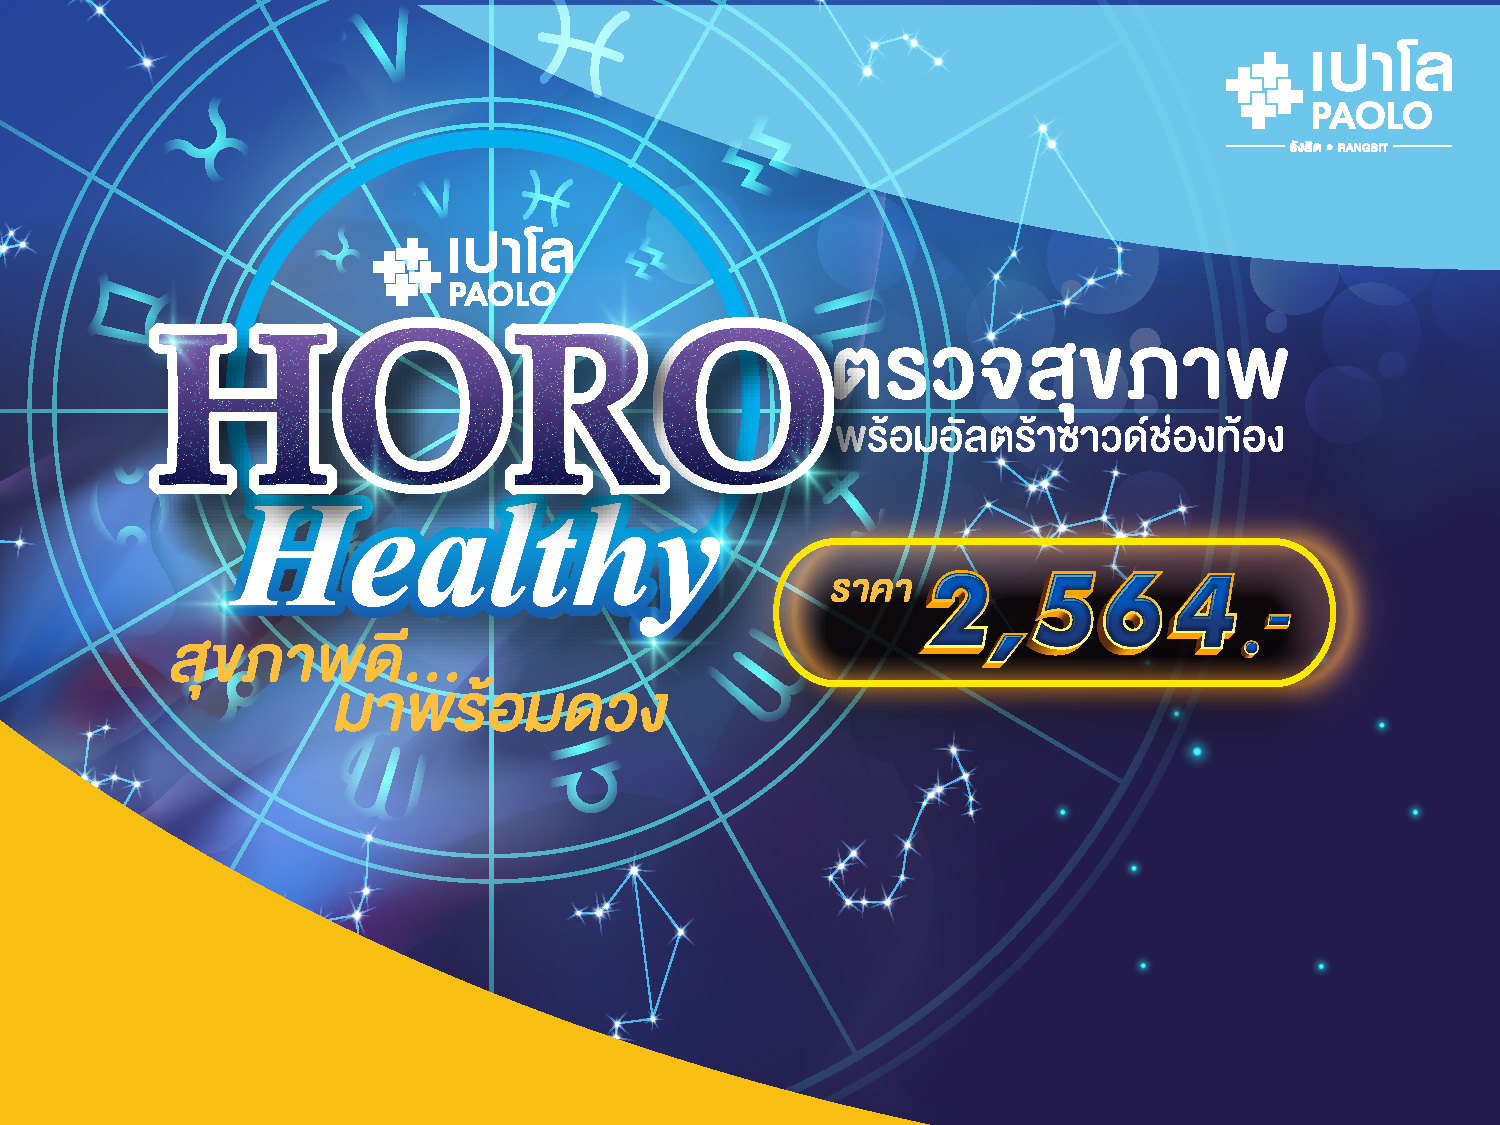 ขอเชิญร่วมกิจกรรม Horo Healthy 